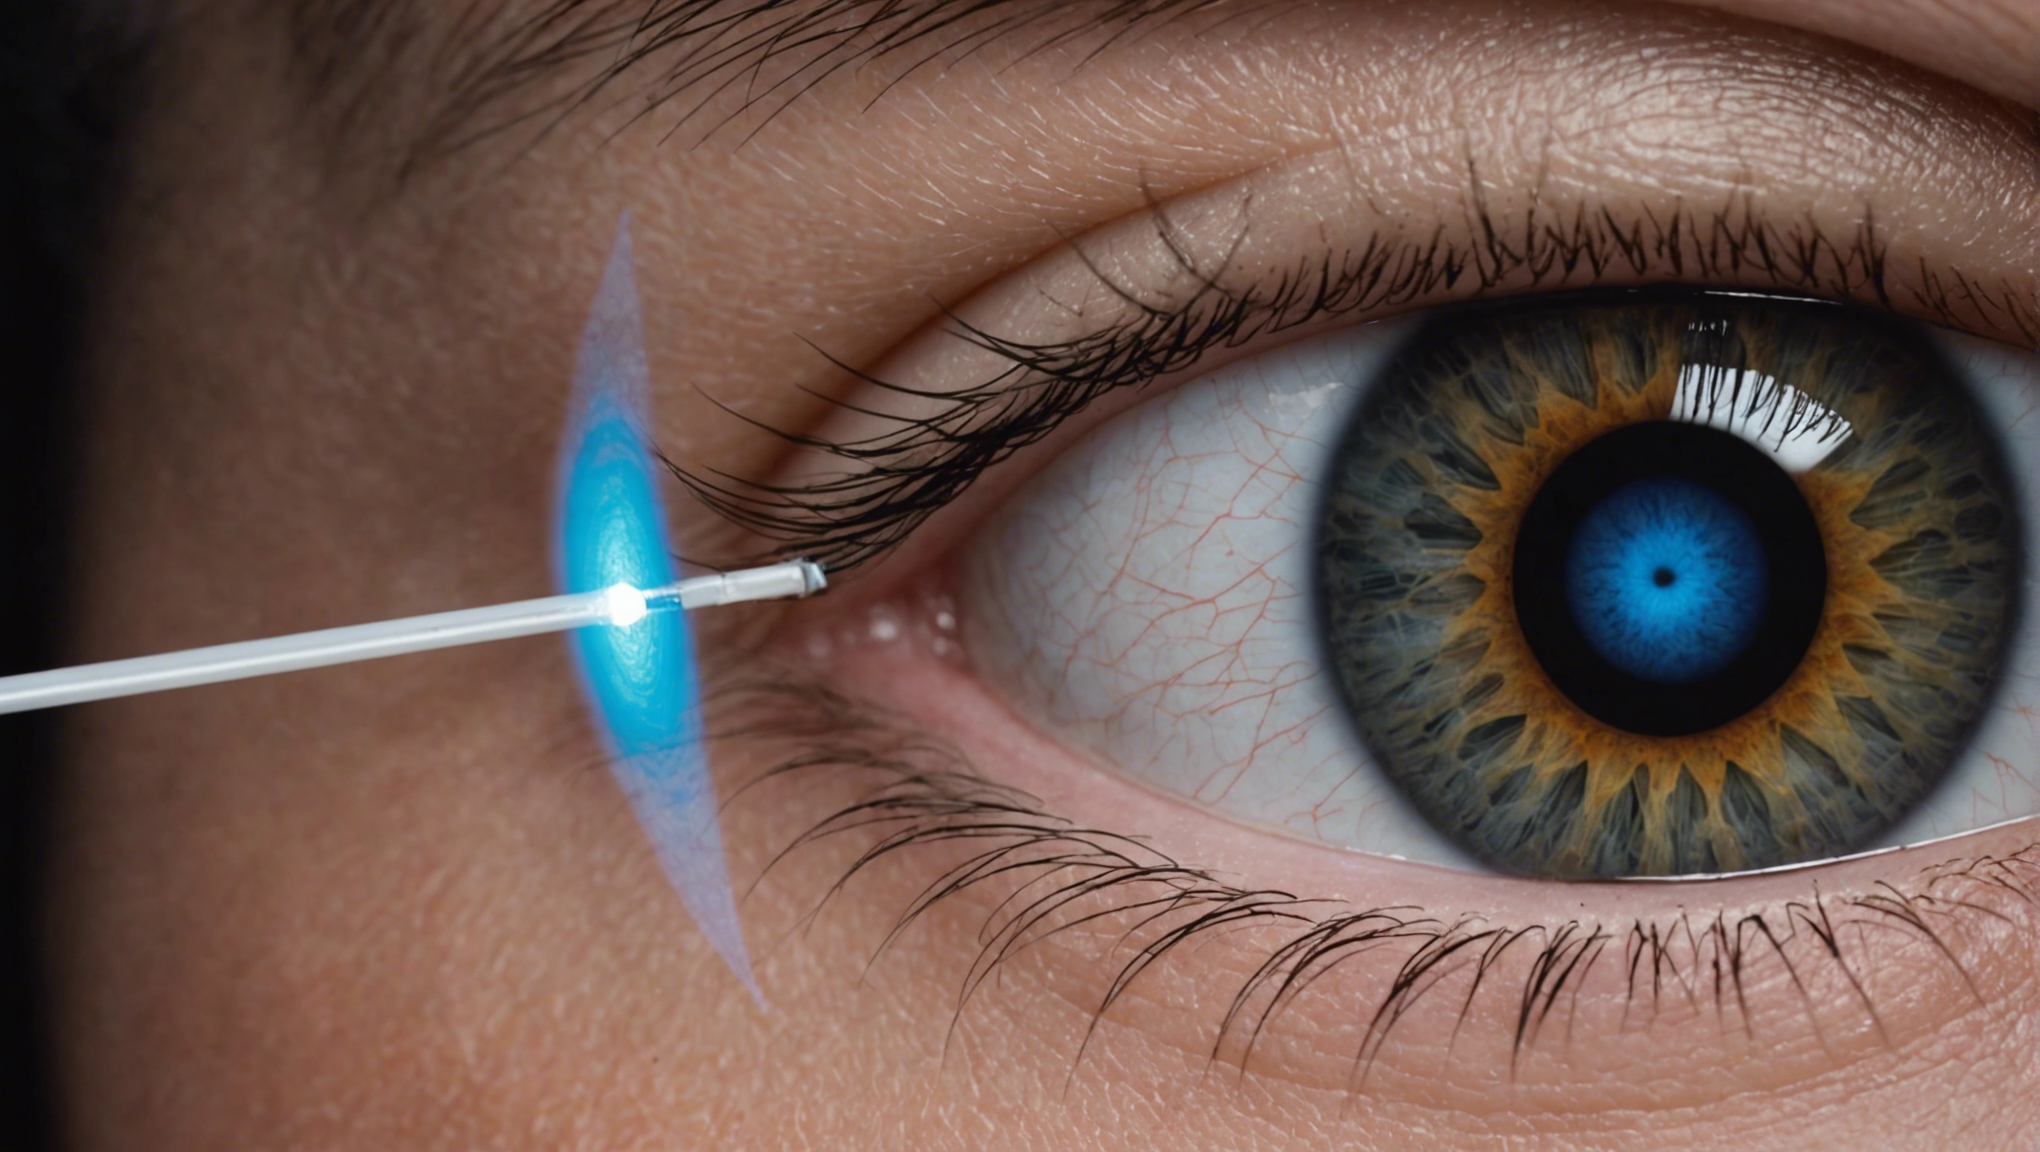 découvrez l'epi-lasik (epithelial laser in situ keratomileusis), une technique de chirurgie réfractive offrant une alternative sûre et efficace pour corriger la vision.